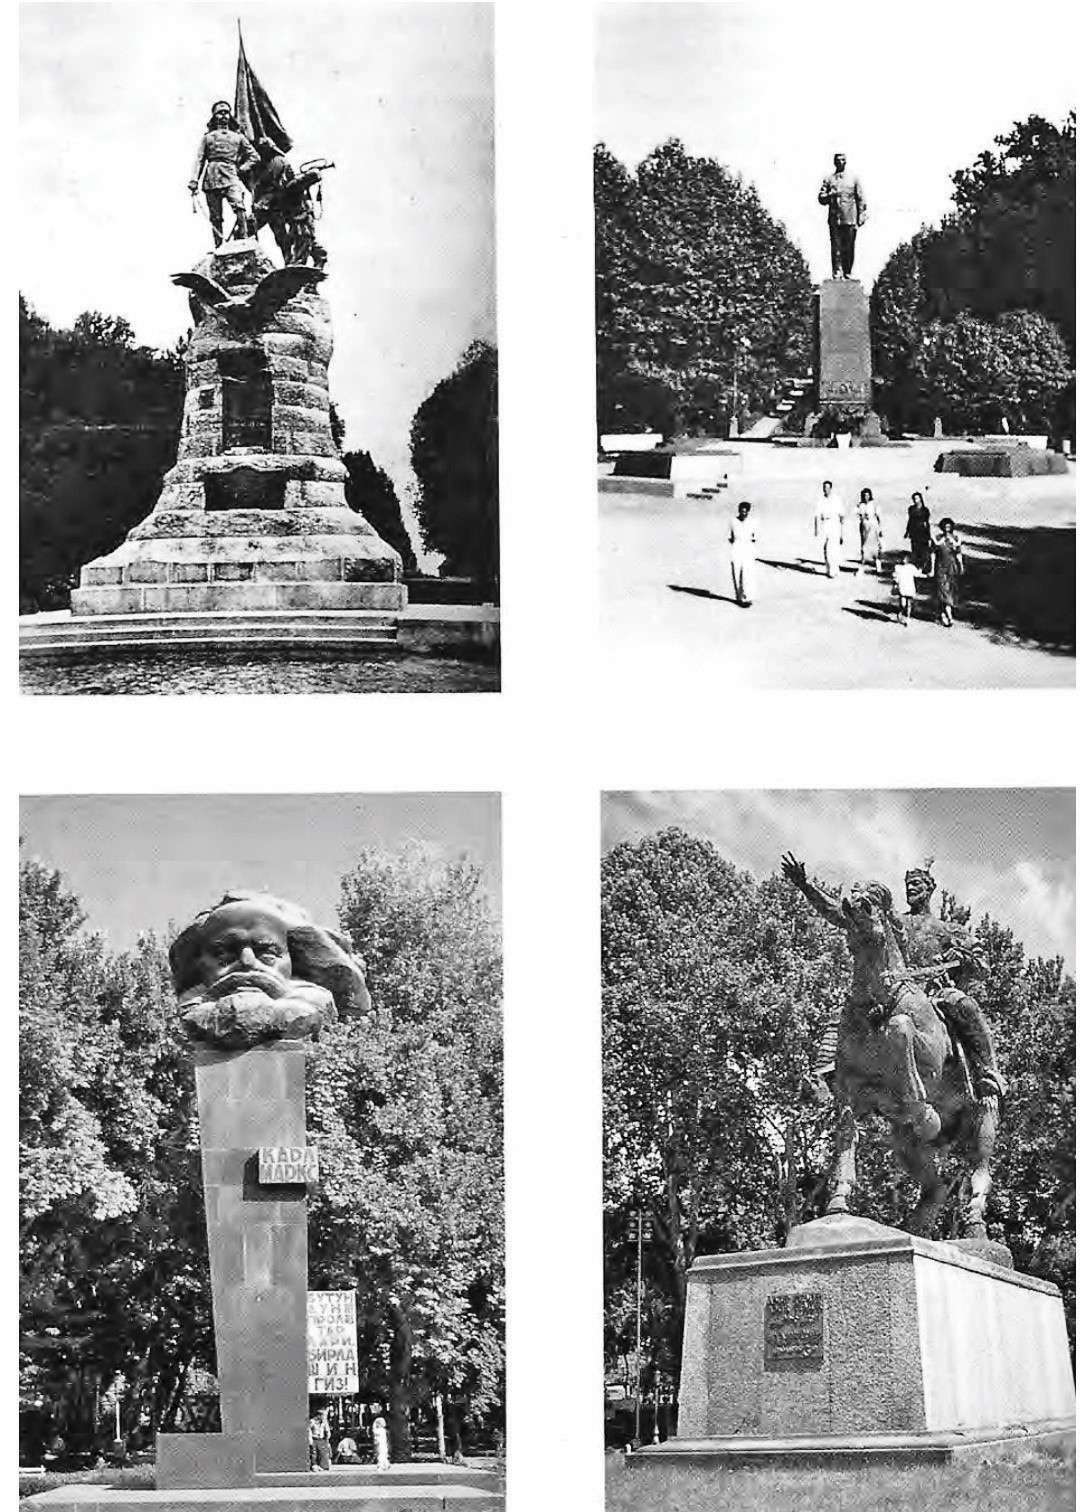 Özbekistan’ın başkenti nTaşkent’in merkezindeki nmeydanda heykellerin ndeğişimleri: n- Meydanda önce Türkistan’ı nişgal eden Rus generali von nKaufmann’ın heykeli nyer alıyordu.n- Sovyetlerin ilk döneminde nStalin’in heykeli konuldu. n- Daha sonra Karl Marks nheykeli yerleştirildi. n- Bağımsızlıktan sonra o nda kaldırıldı ve yerine Emir nTimur’un heykeli dikildi.